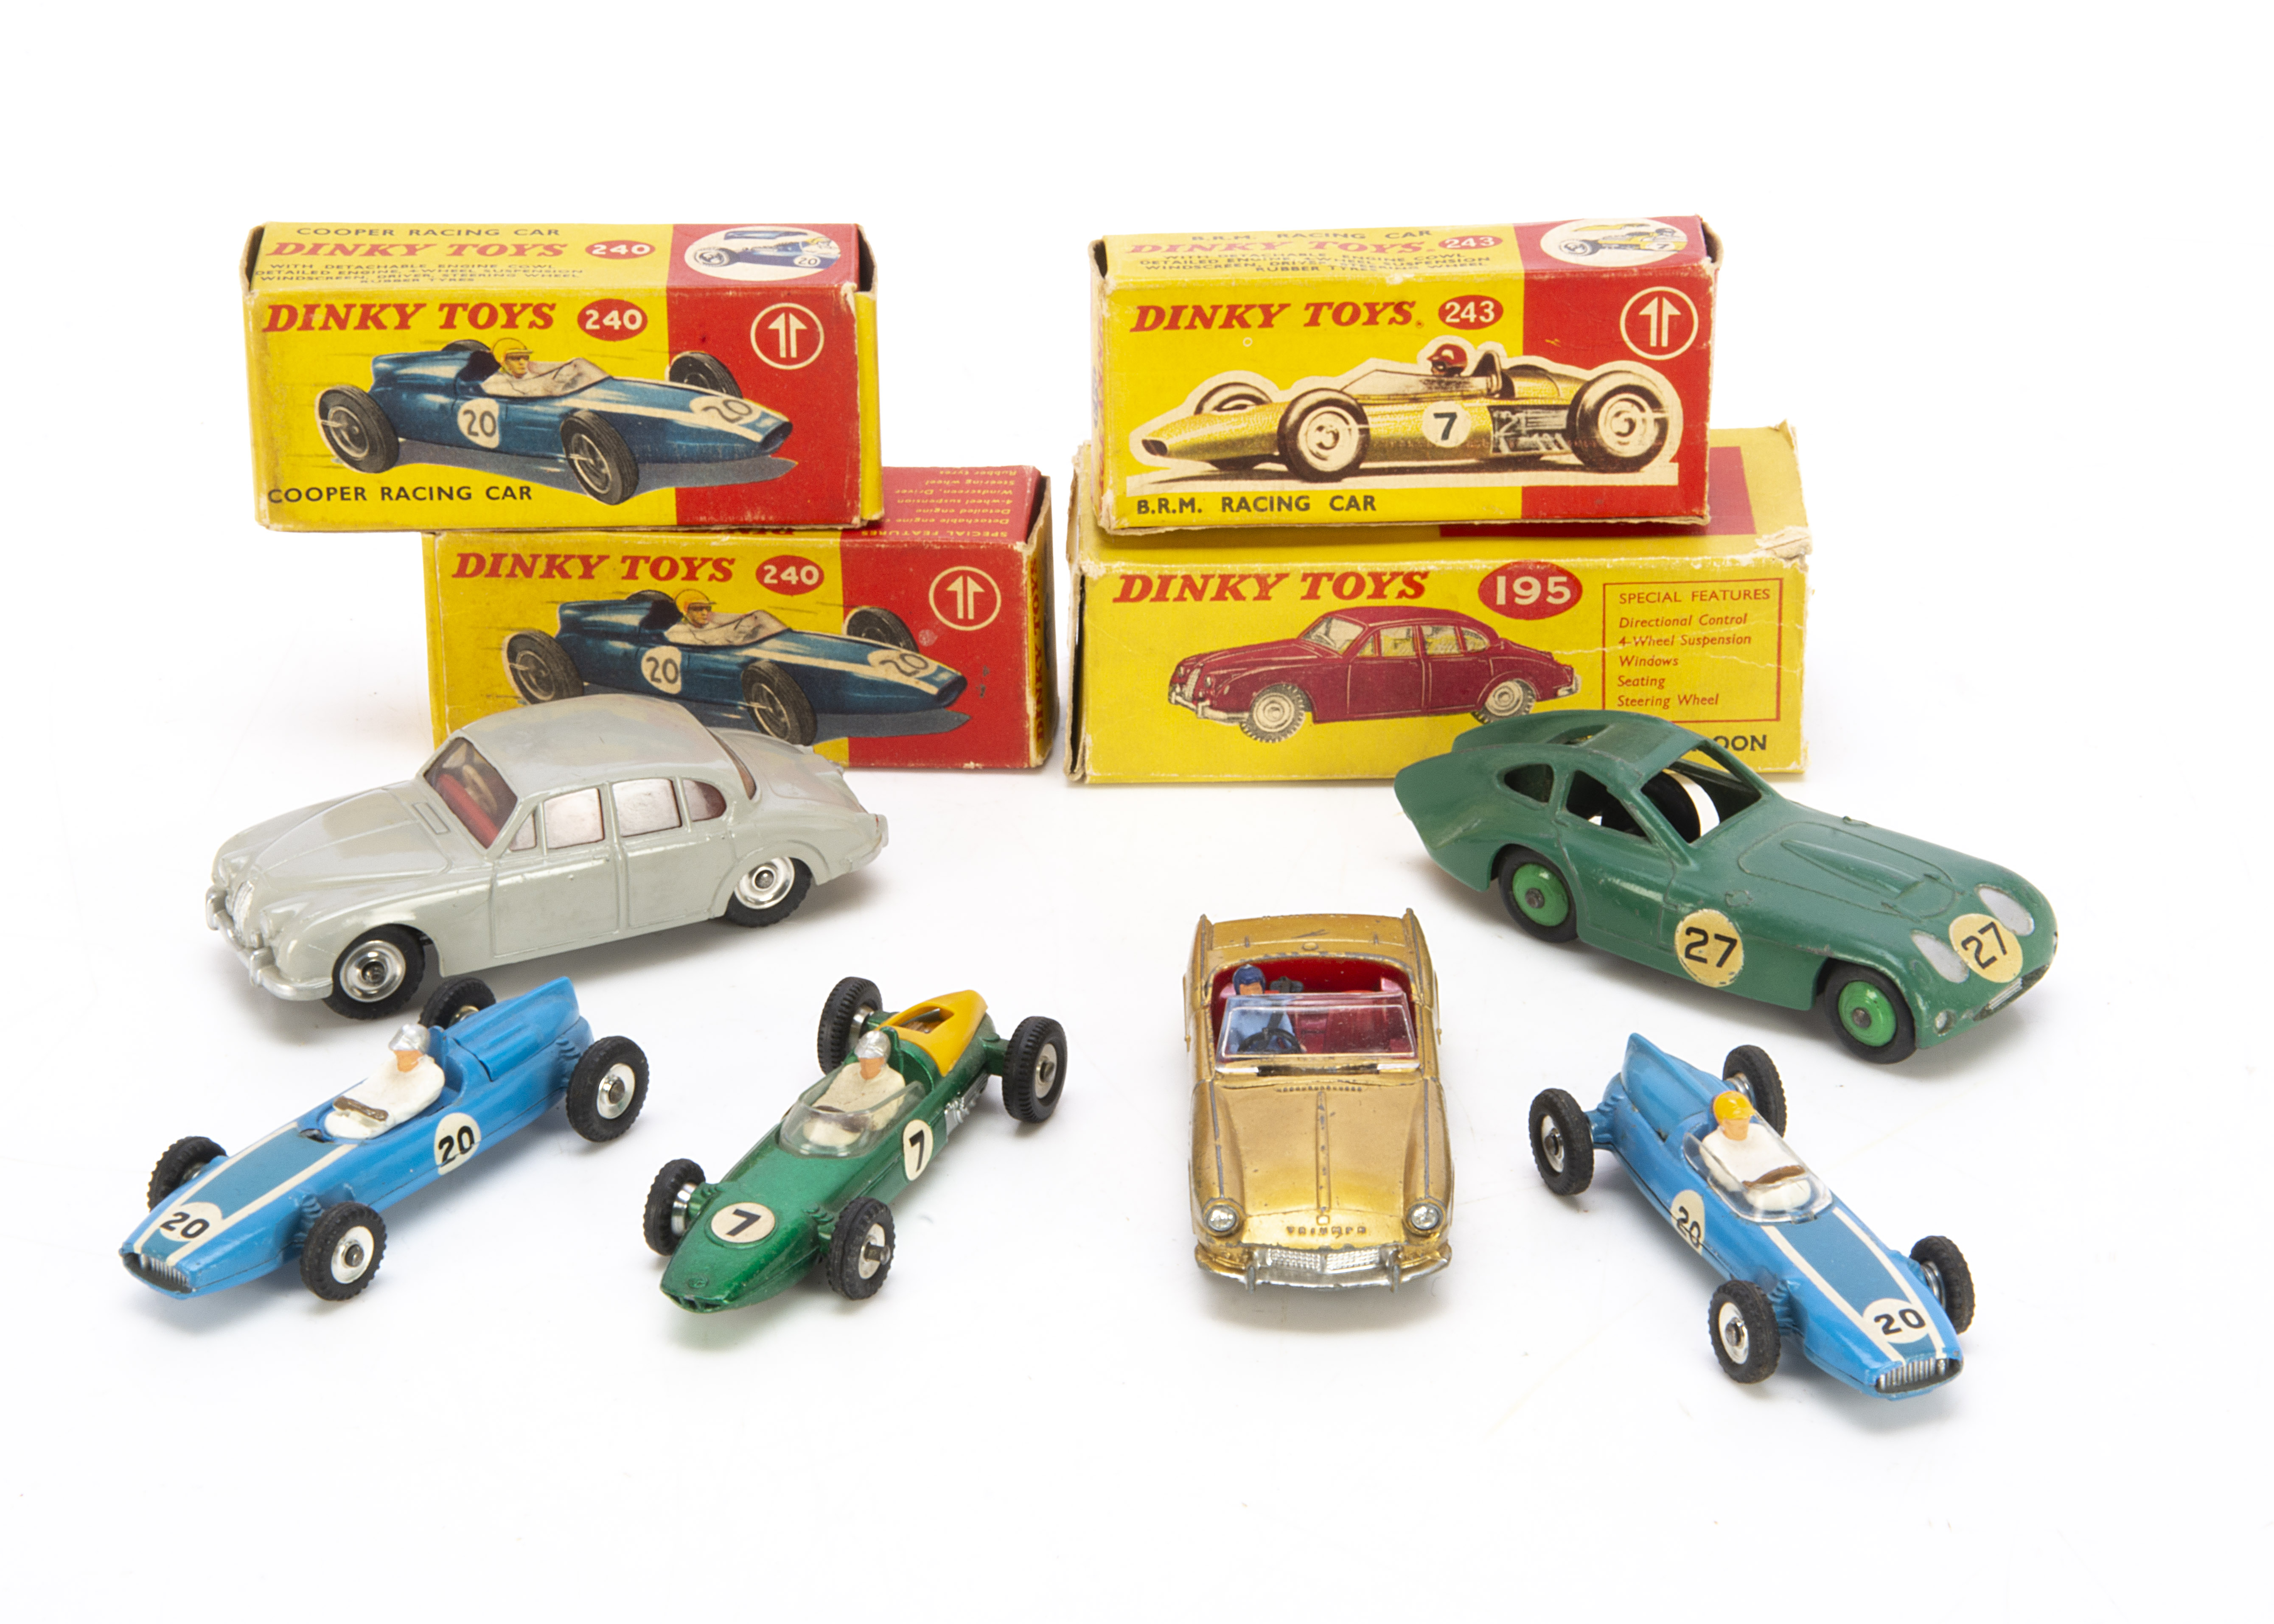 Dinky Toy Racing & Sports Cars, 195 Jaguar 3.4 Saloon, grey body, red interior, spun hubs, 240